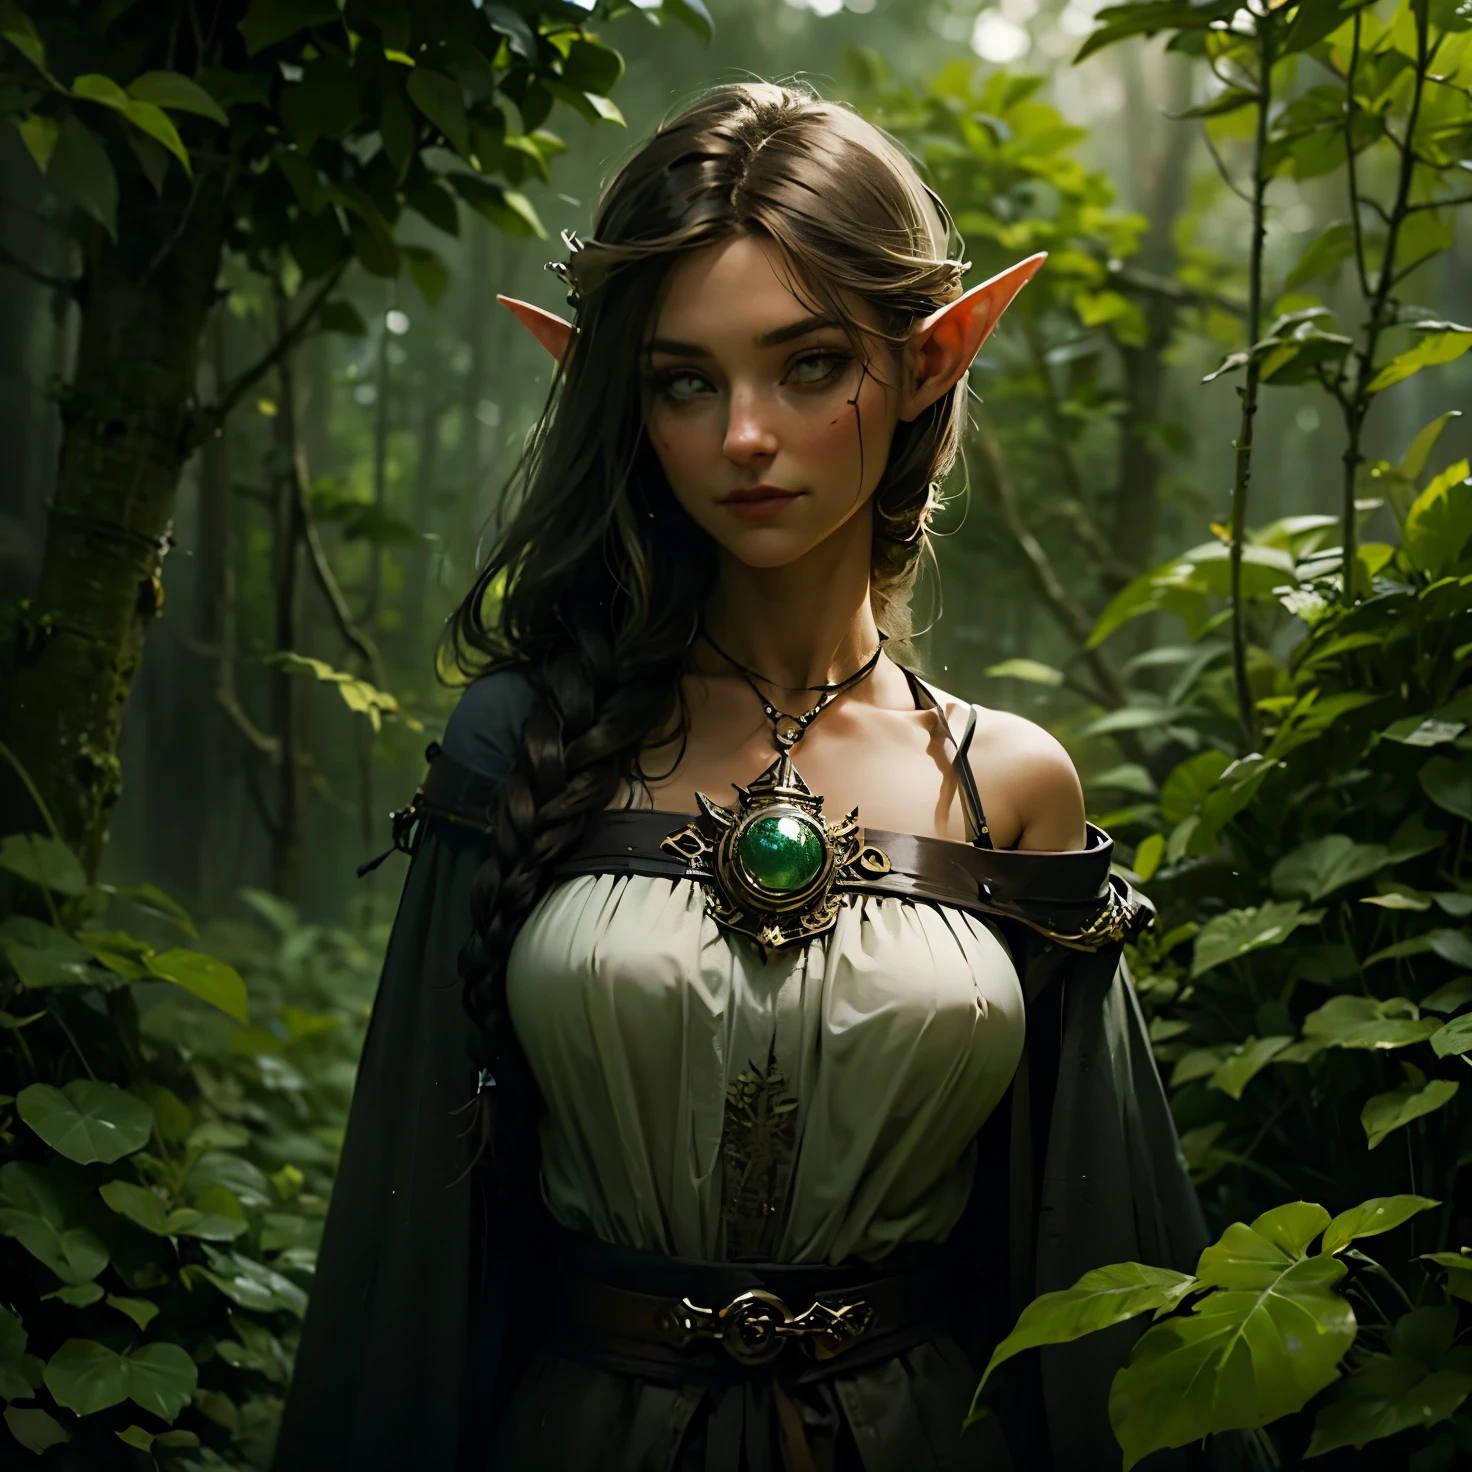 женщина-эльф, длинные черные волосы, Плетеные волосы, Брюнетка, круглое лицо, зелено-белая одежда, в лесу, фантастический персонаж